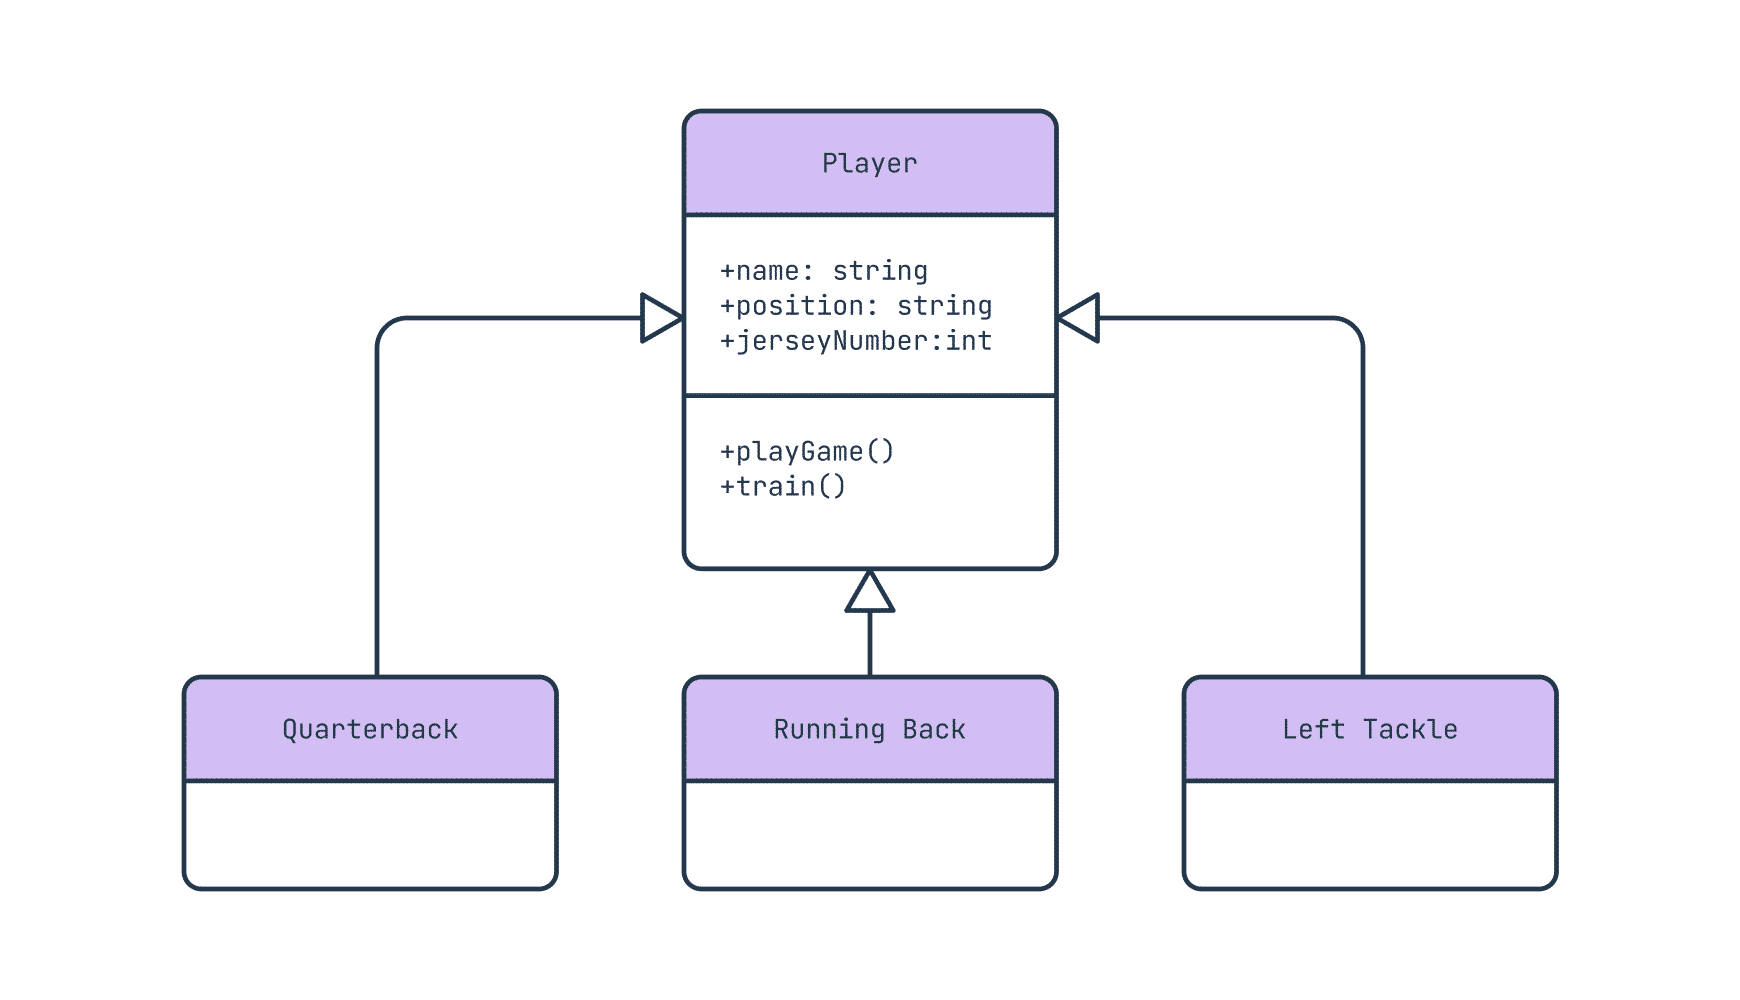 An inheritance relationship in a UML class diagram